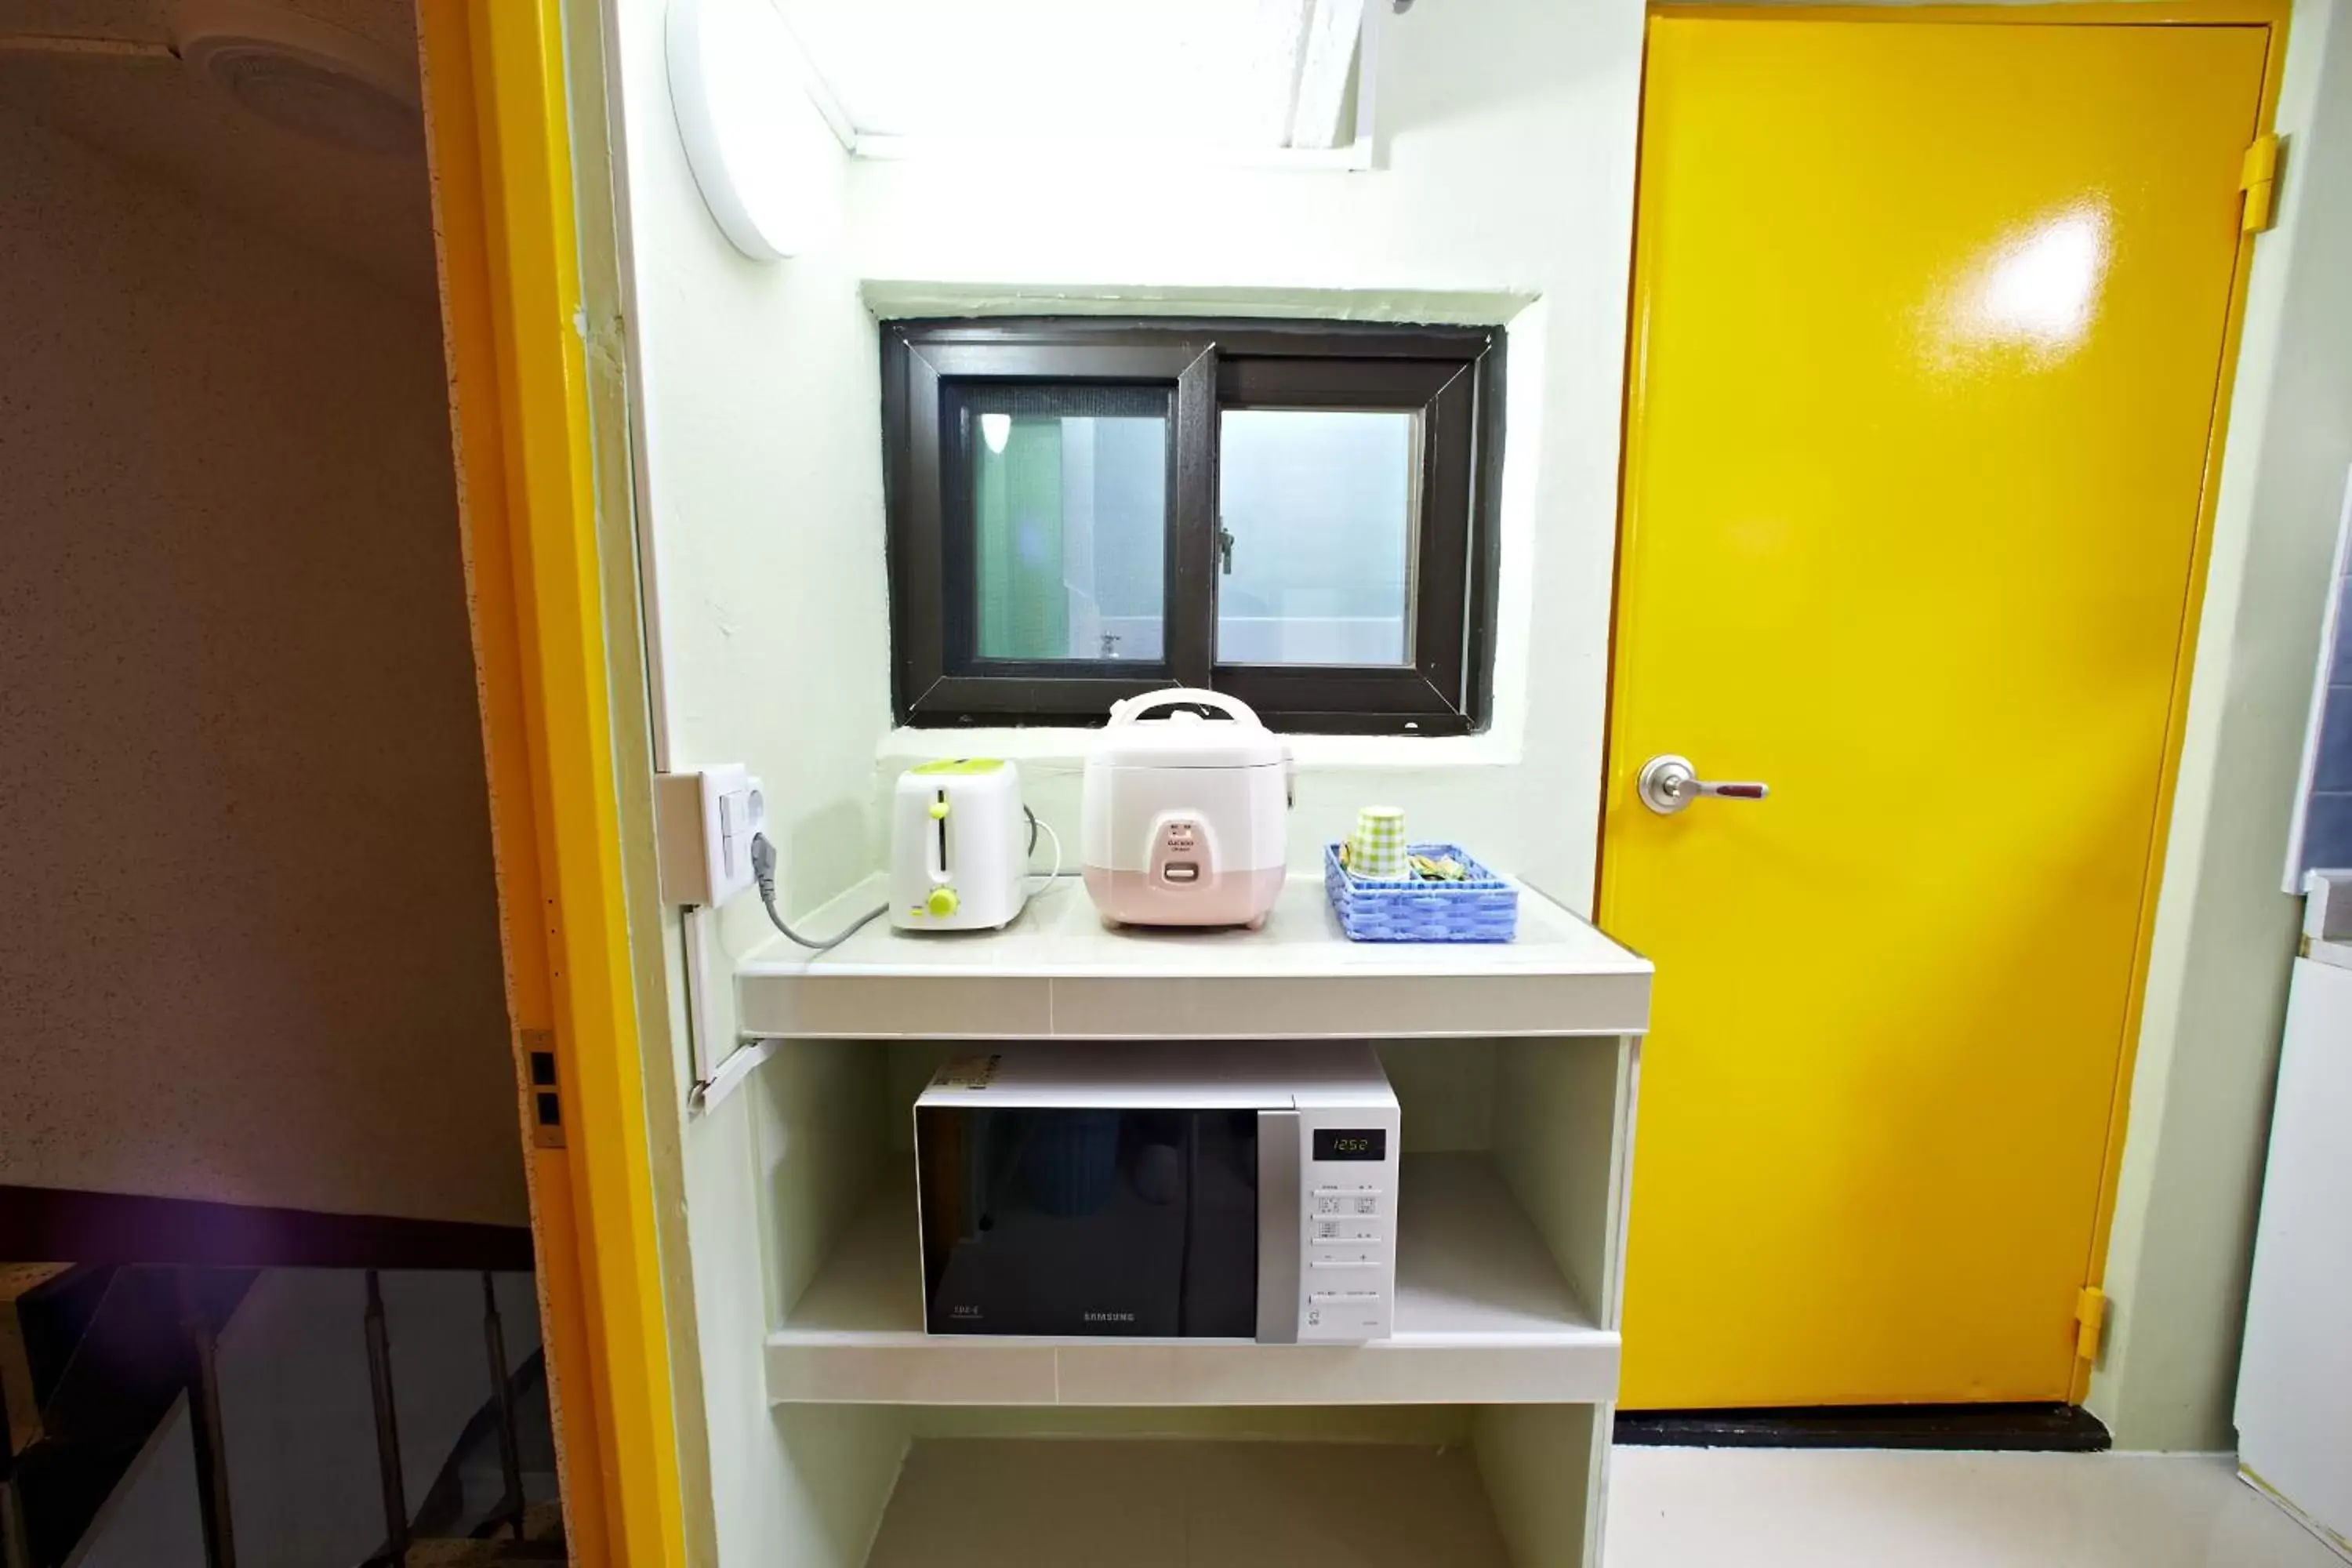 Coffee/tea facilities, Bathroom in Rainbow Hotel Myeongdong